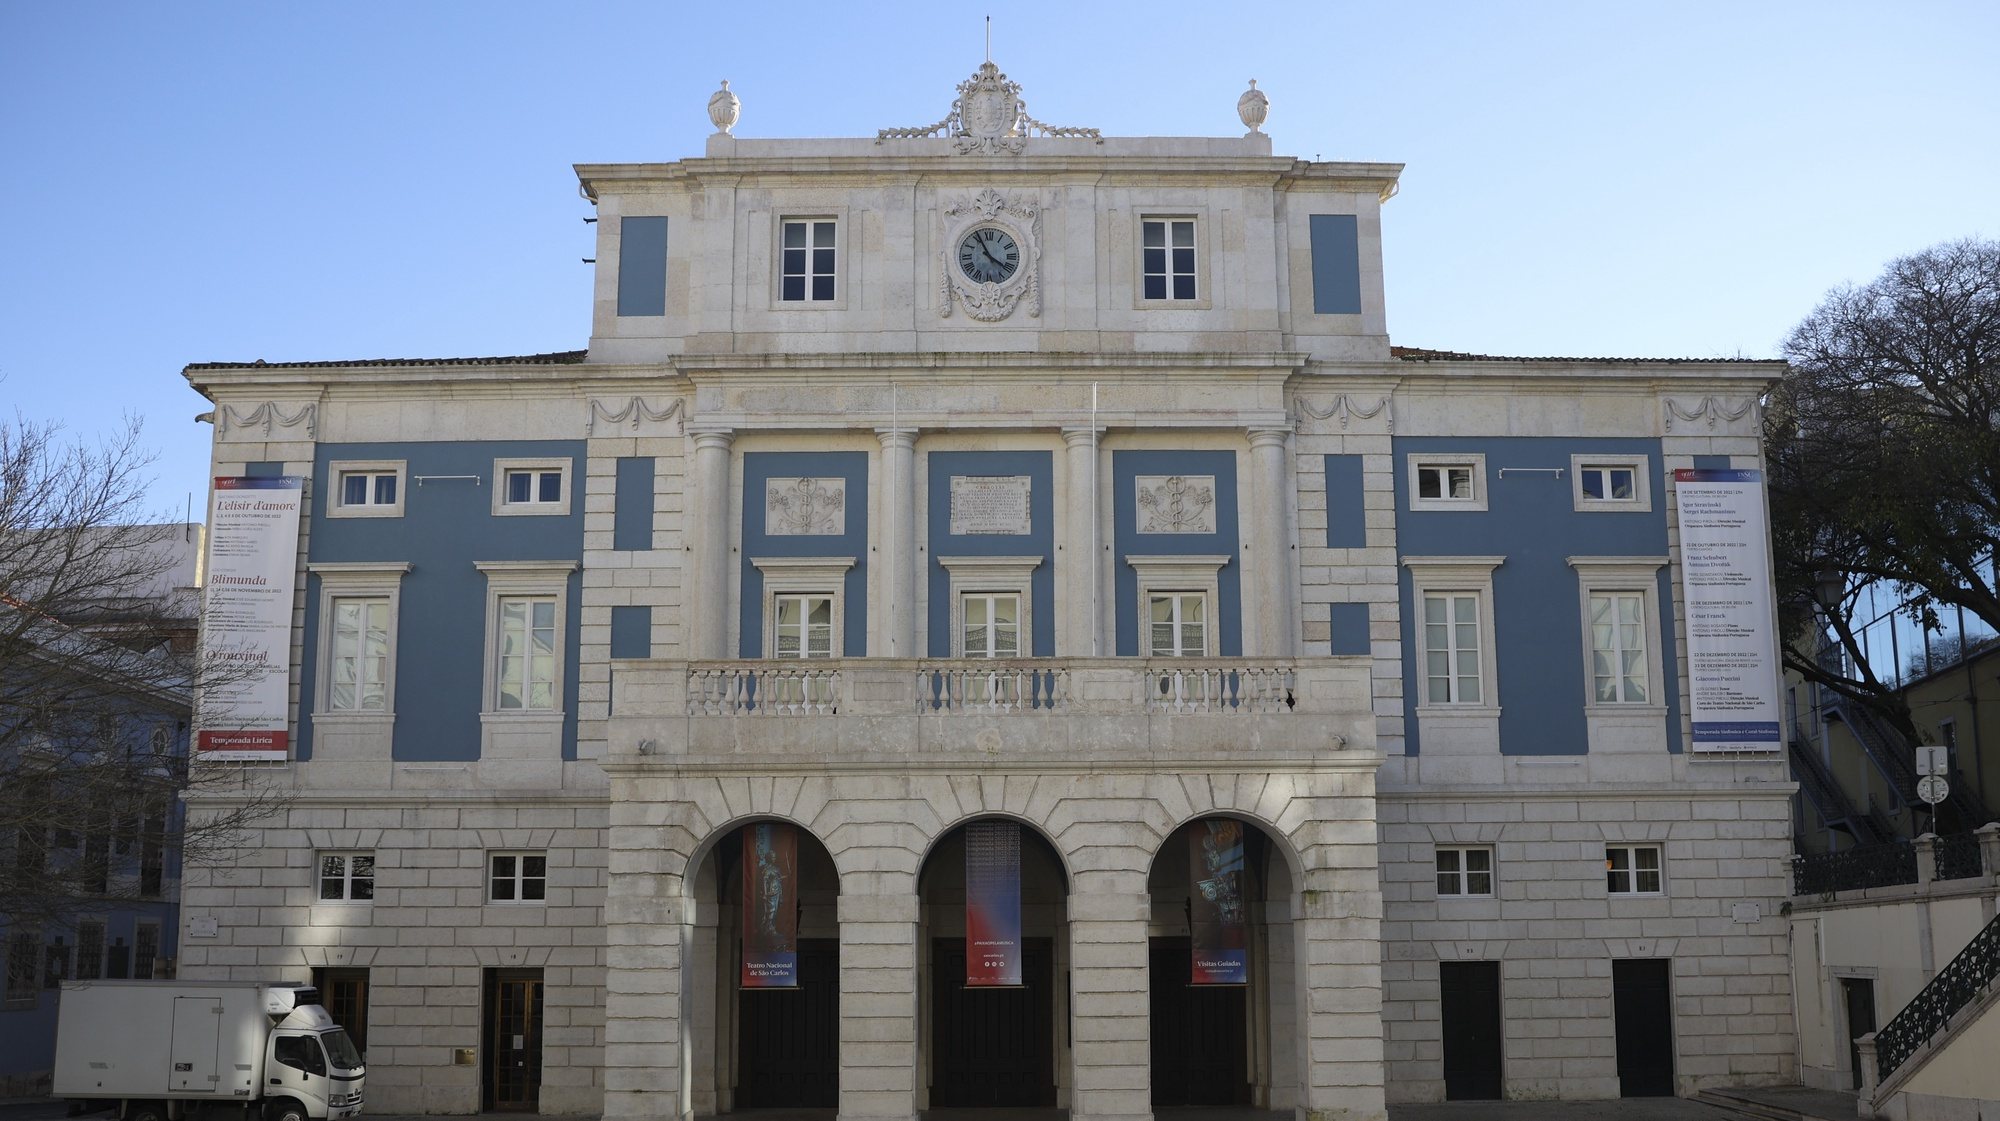 Fachada do Teatro Nacional de São Carlos, Lisboa, 25 de janeiro de 2023. CARLOS M. ALMEIDA/LUSA